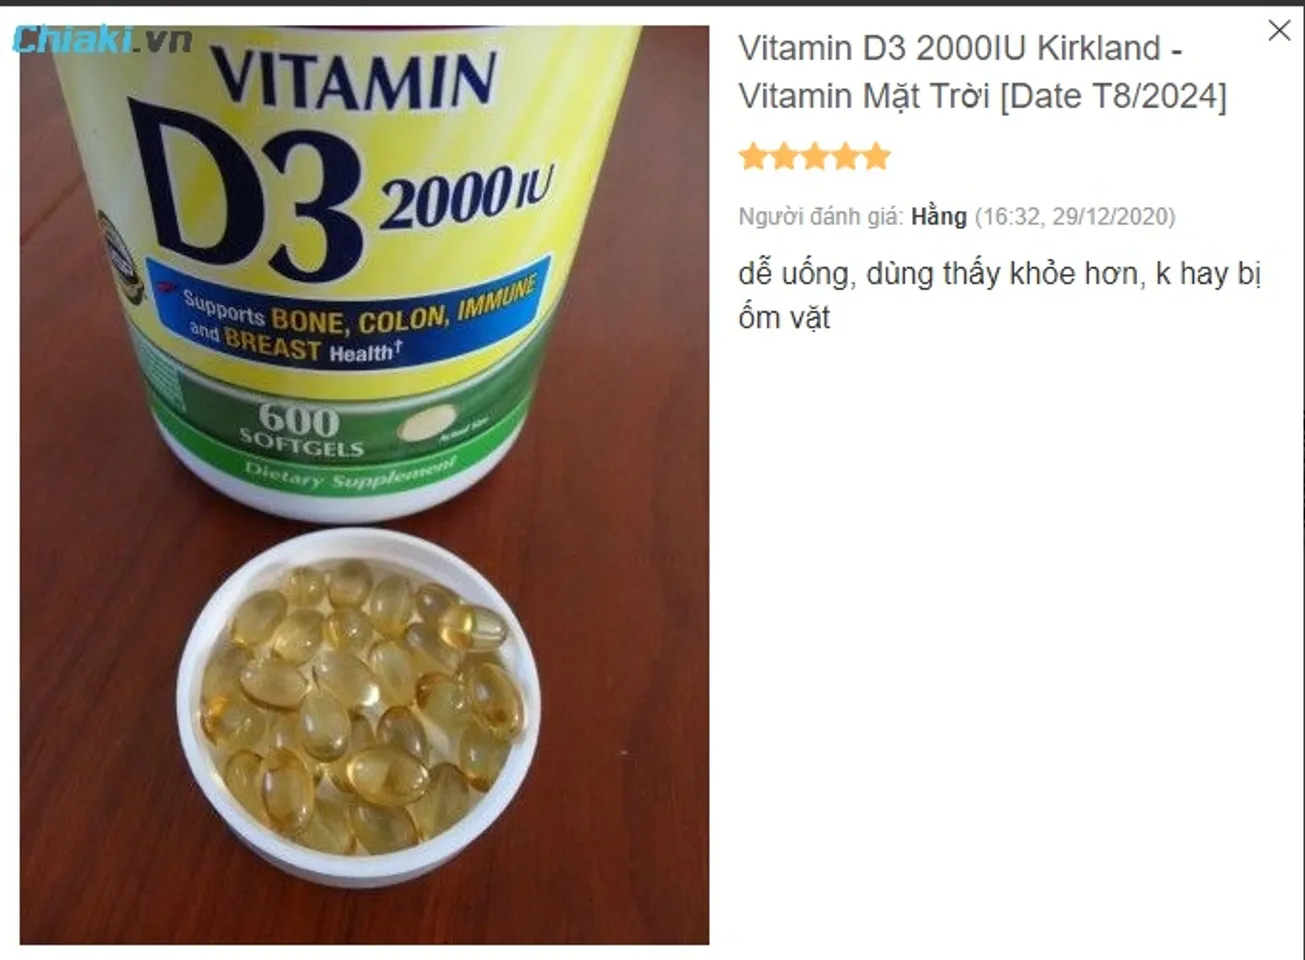 Review Vitamin D3 2000 IU Kirkland từ phía khách hàng